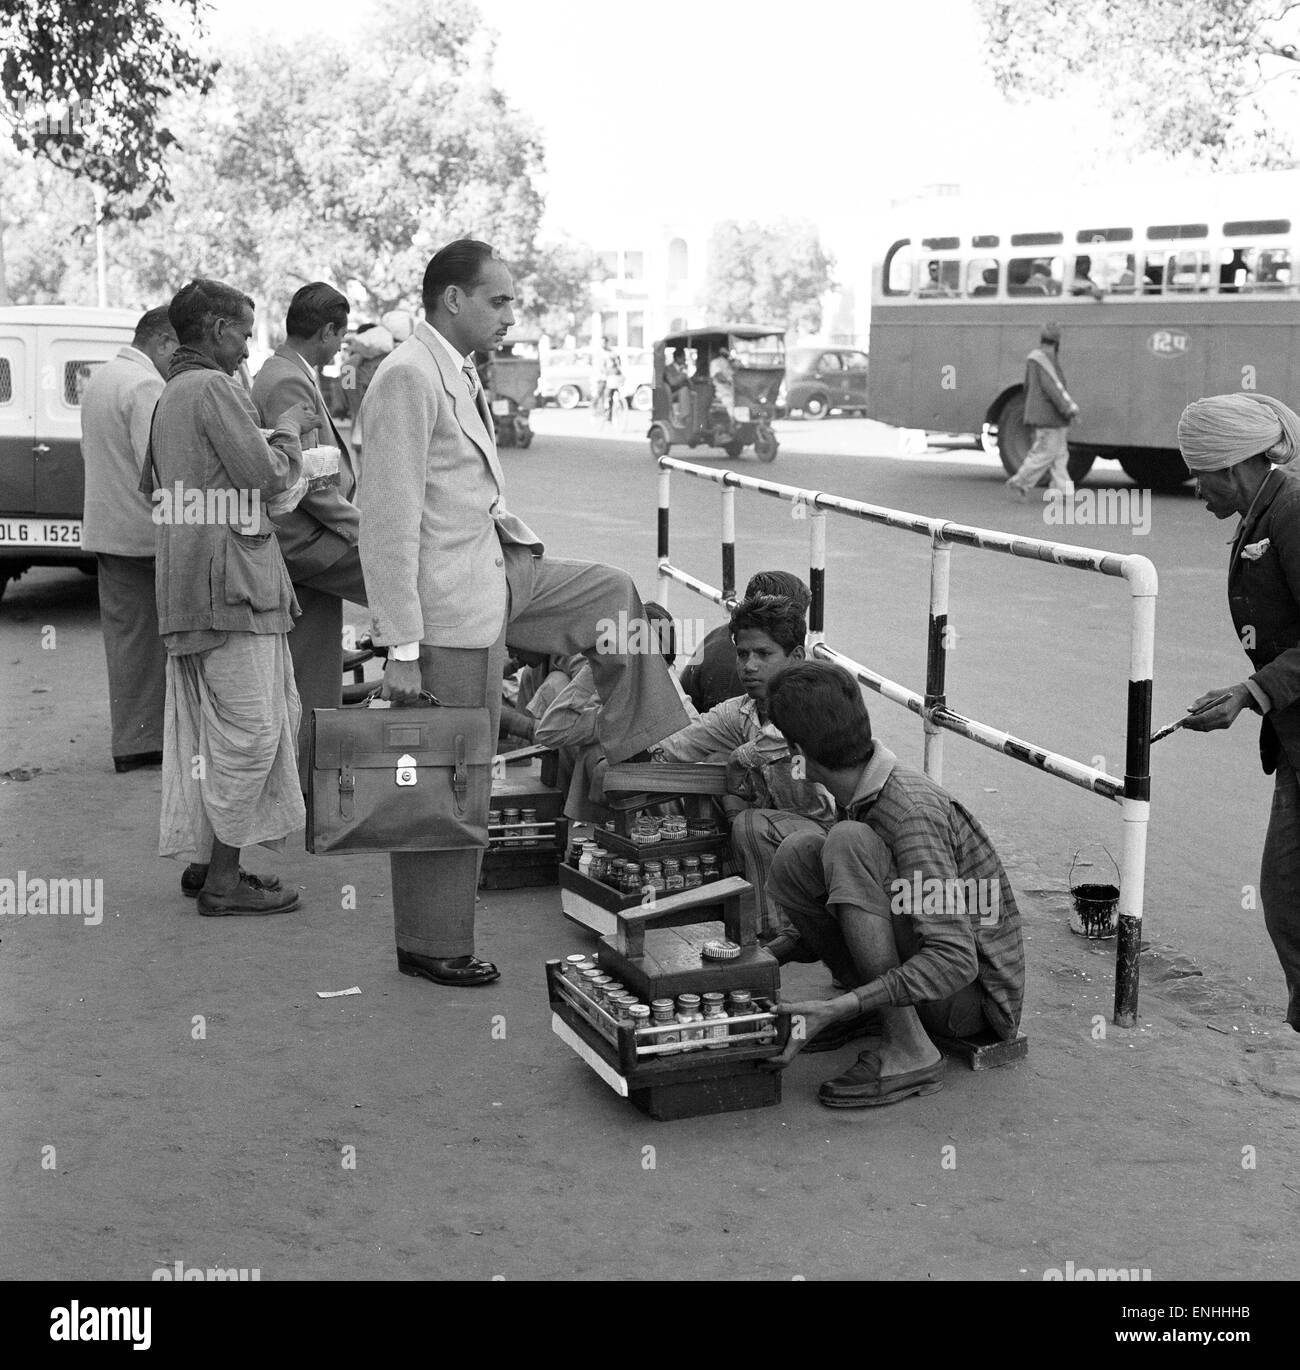 Street scenes, New Delhi, India, January 1961. Stock Photo